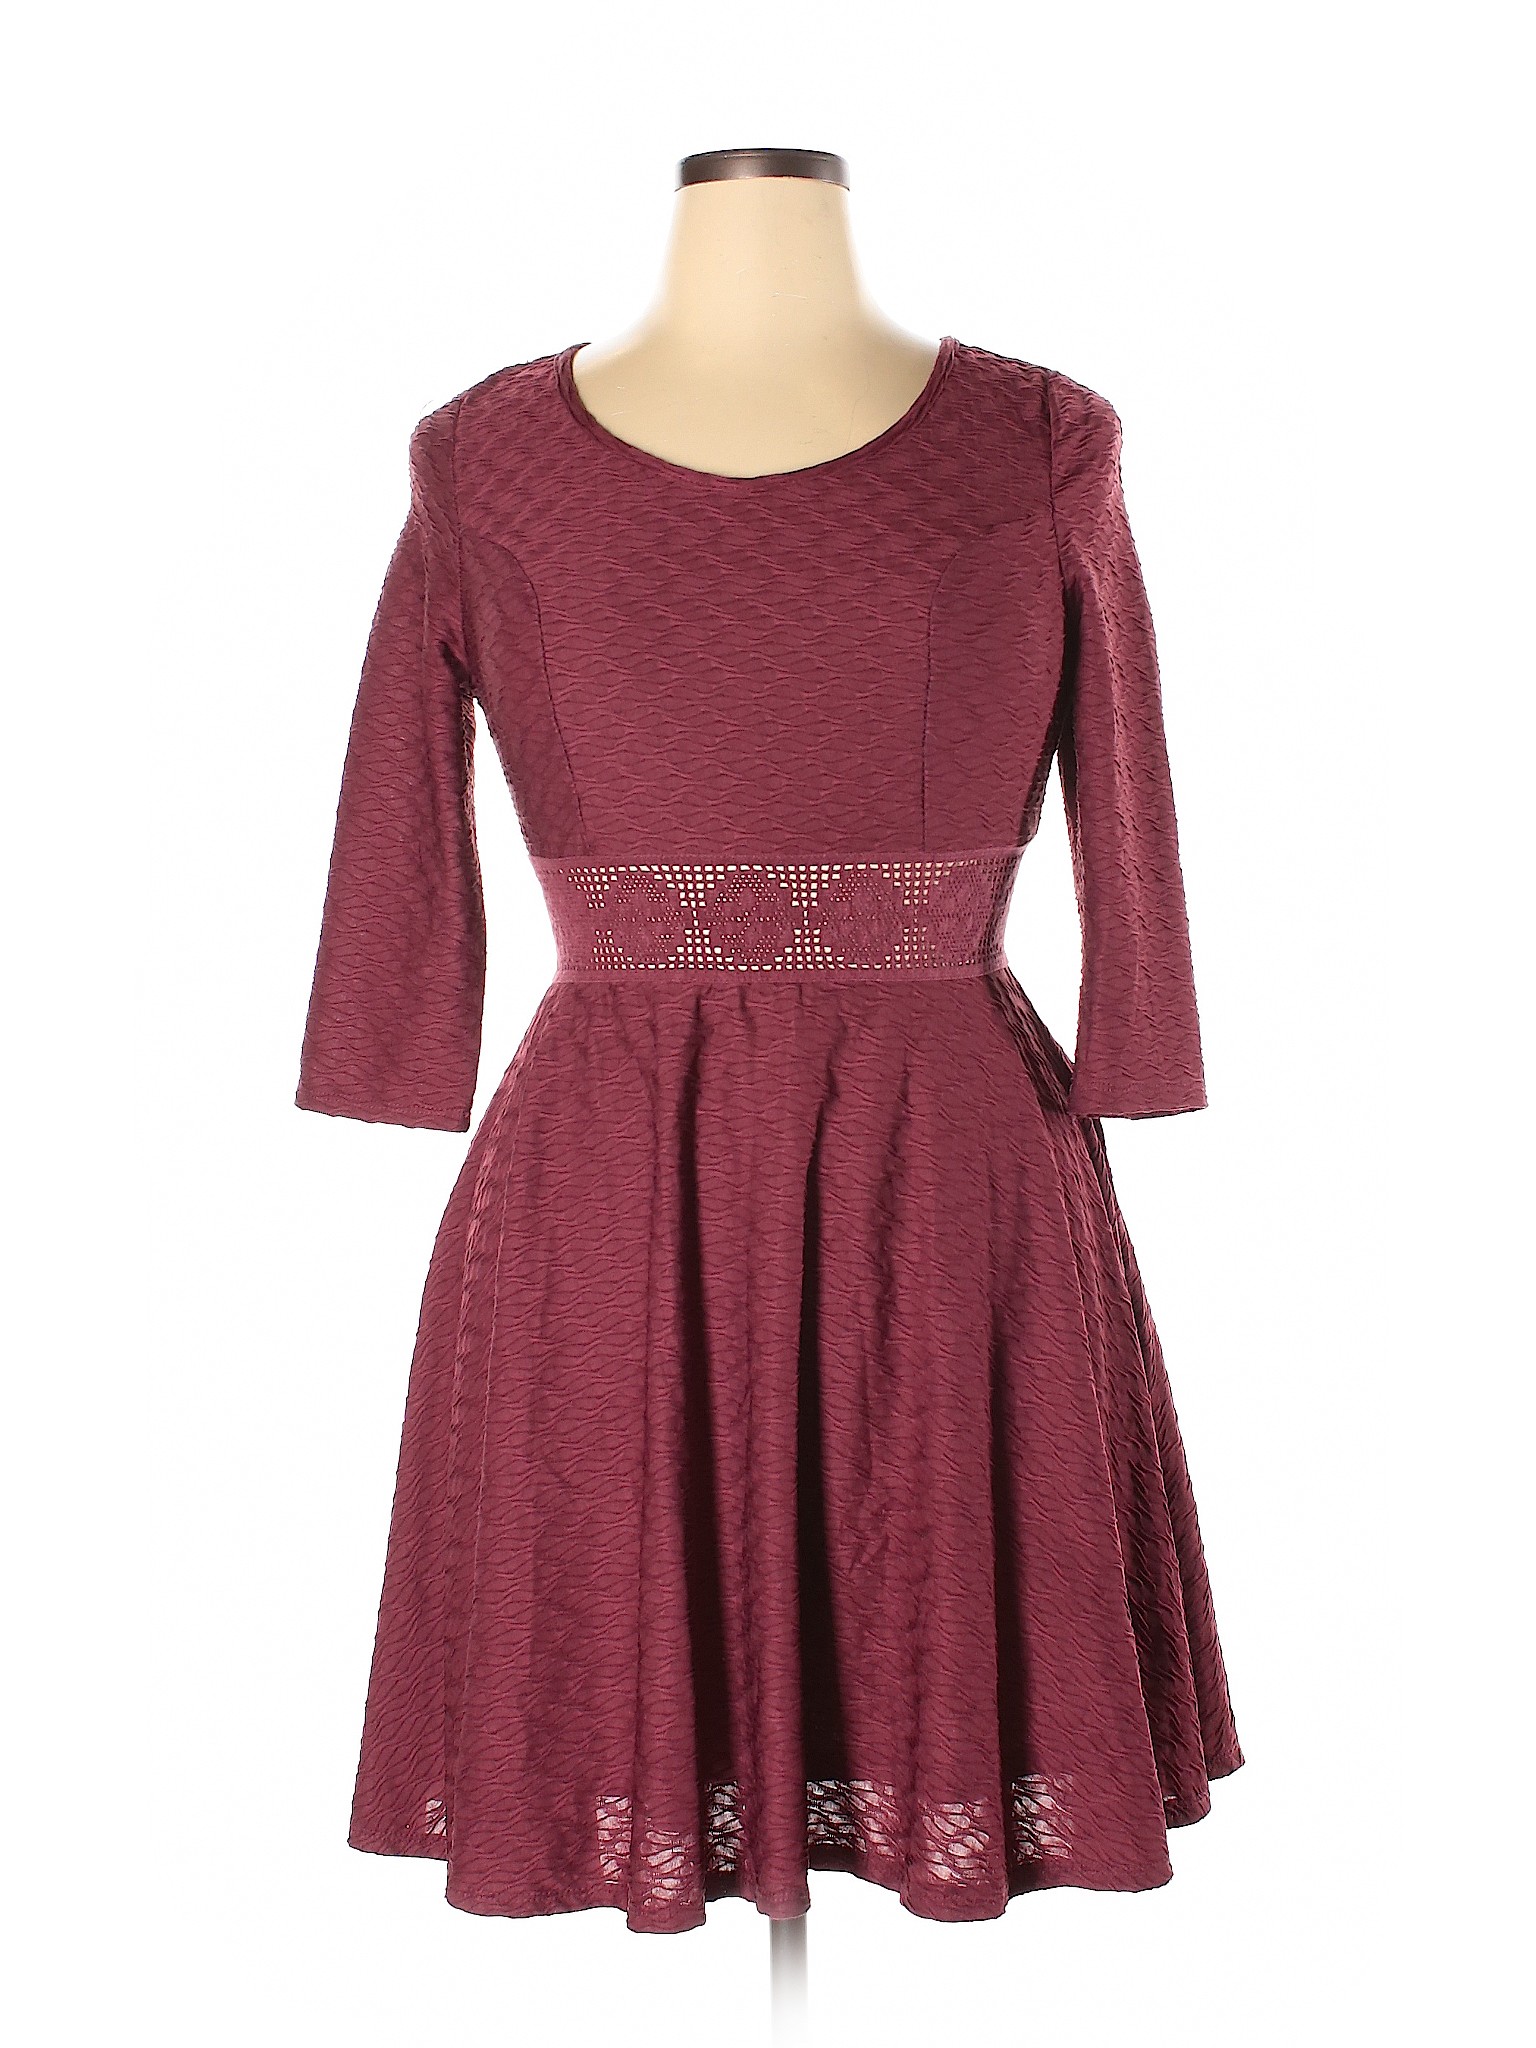 American Rag Cie Women Red Casual Dress XL | eBay